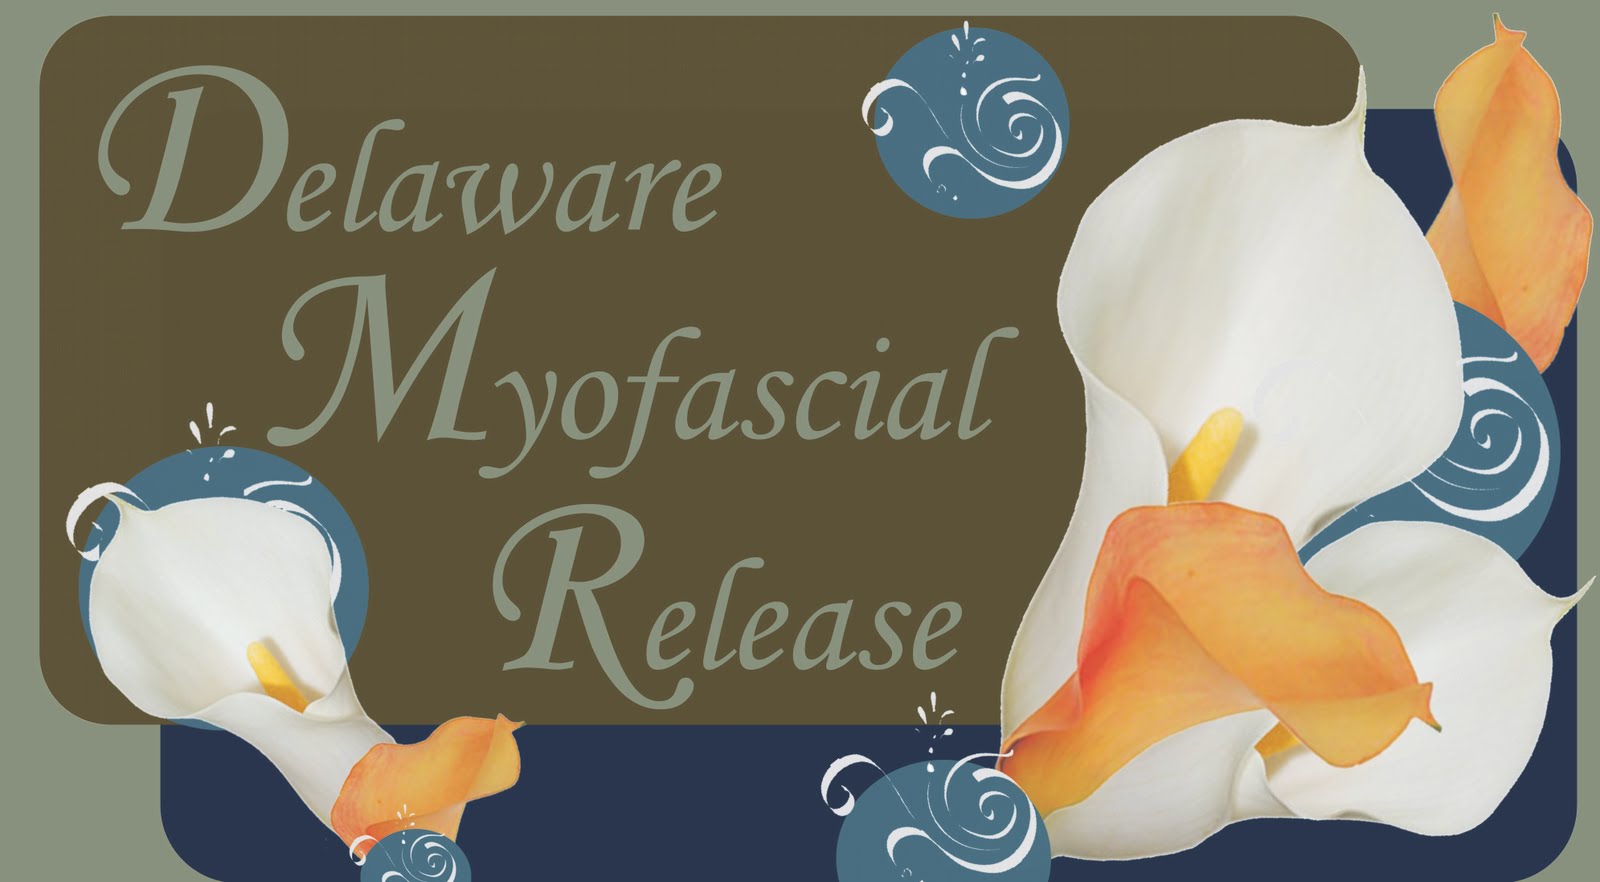 Delaware Myofascial Release